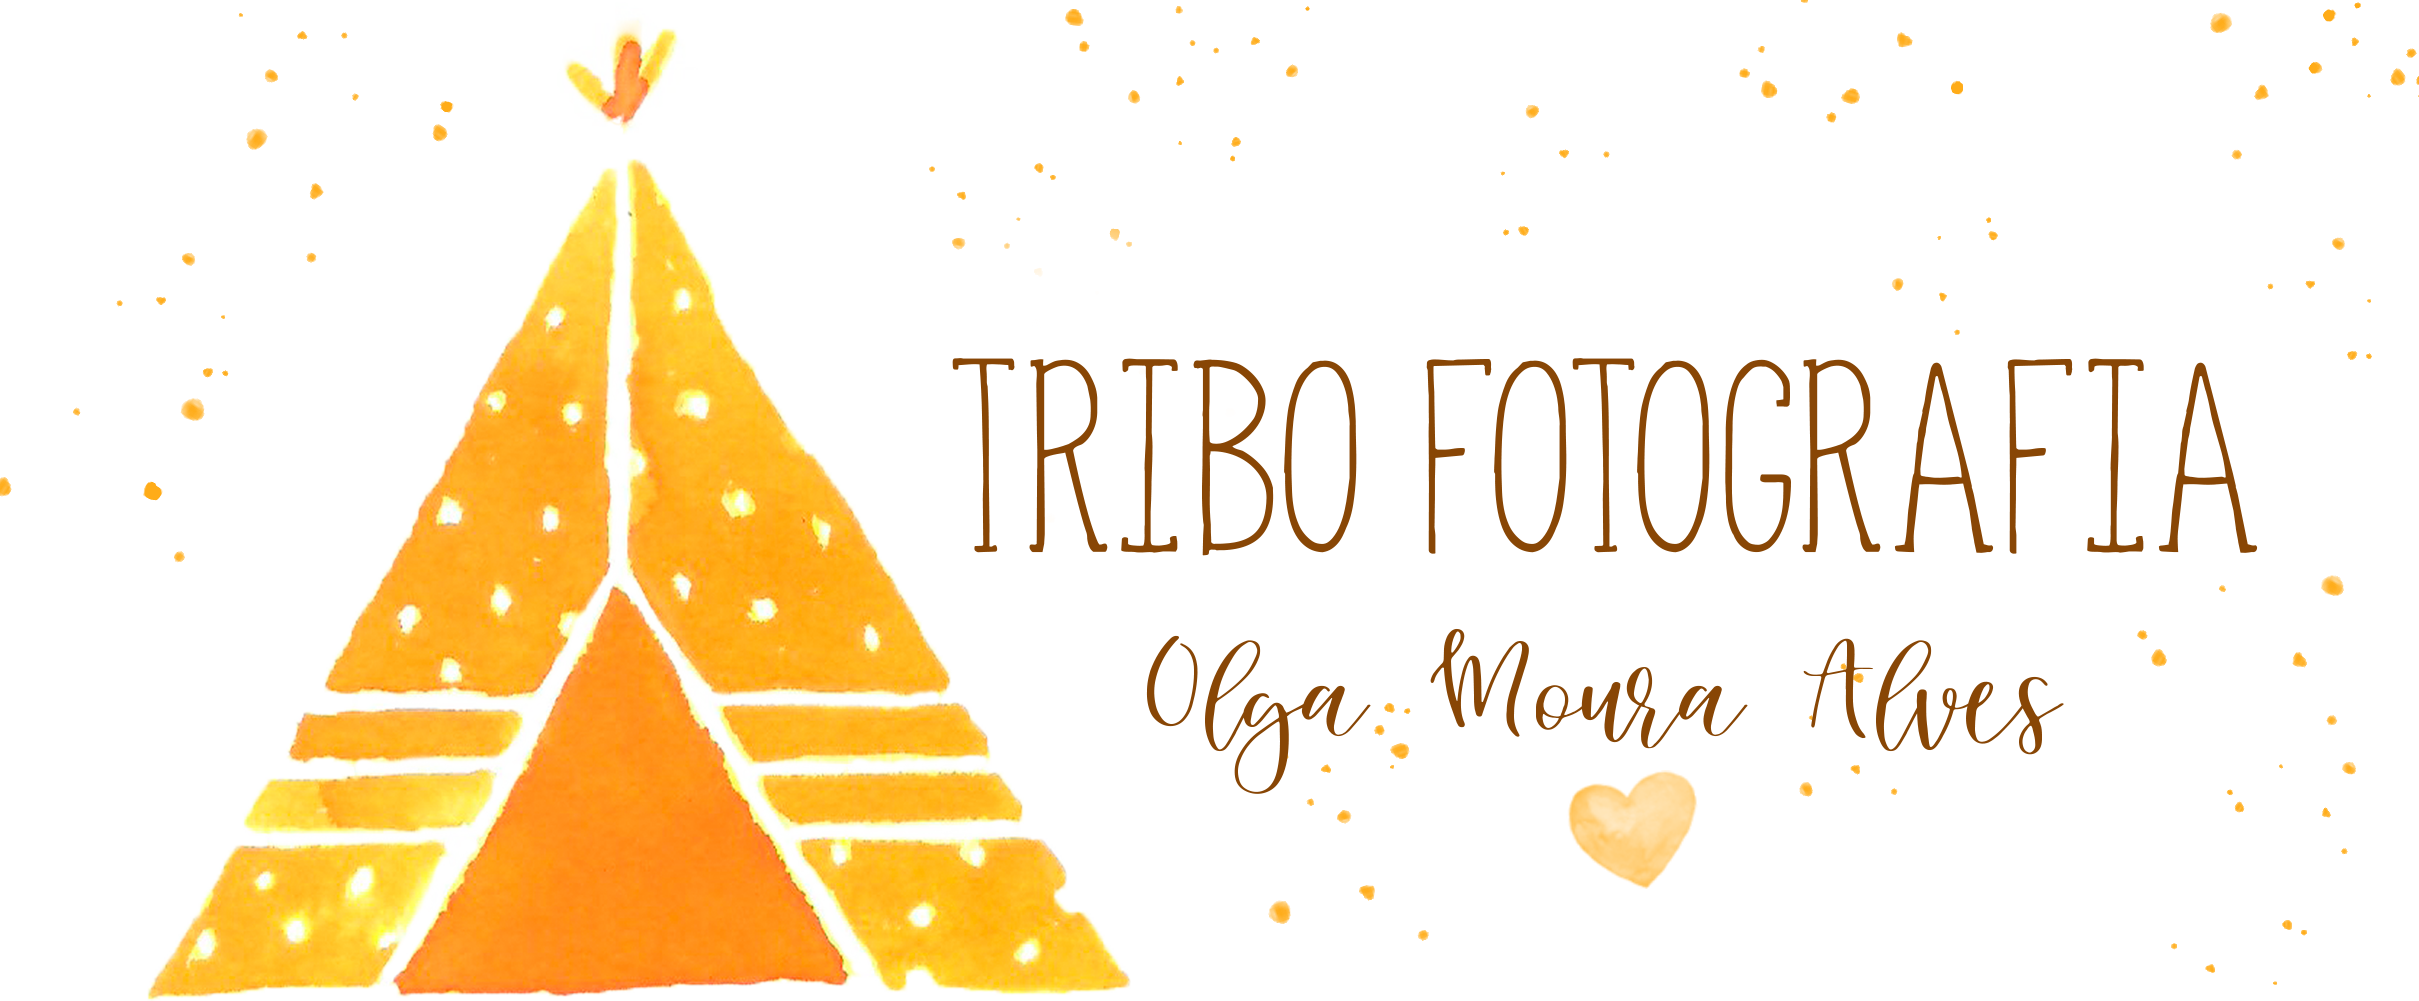 Tribo Fotografia - Fotografia profissional de Família e recém-nascidos